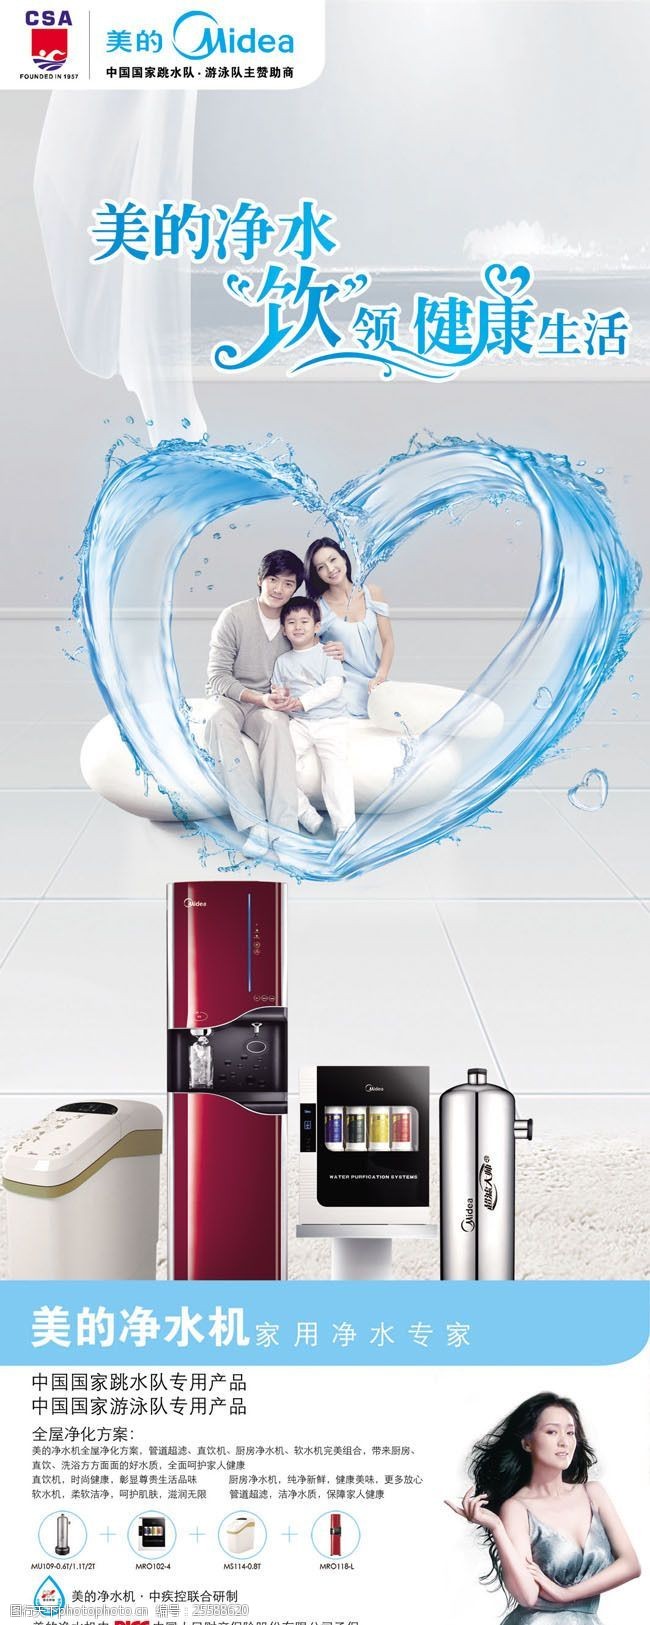 专家介绍幸福家庭美的净水机广告宣传图片